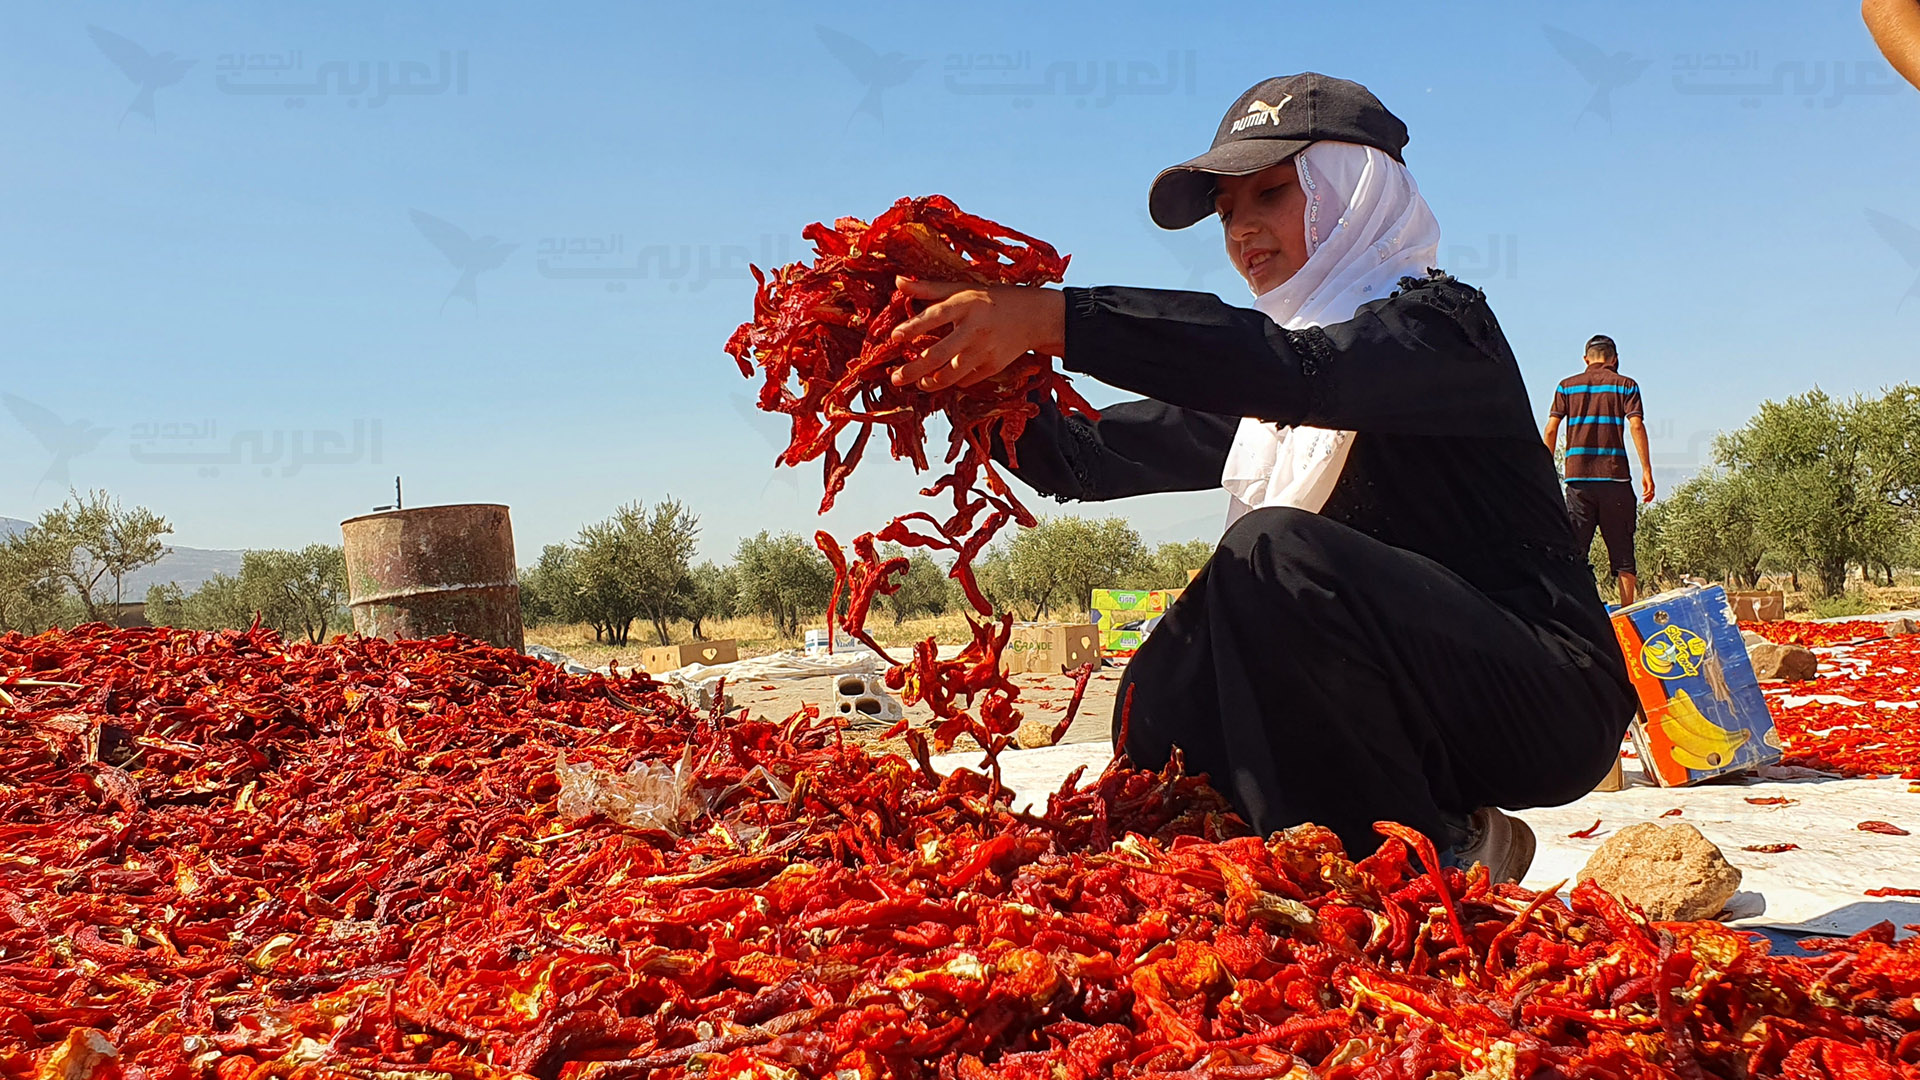 تضطر نساء إلى العمل في إعداد المؤونة على الرغم من الأجر القليل (العربي الجديد)